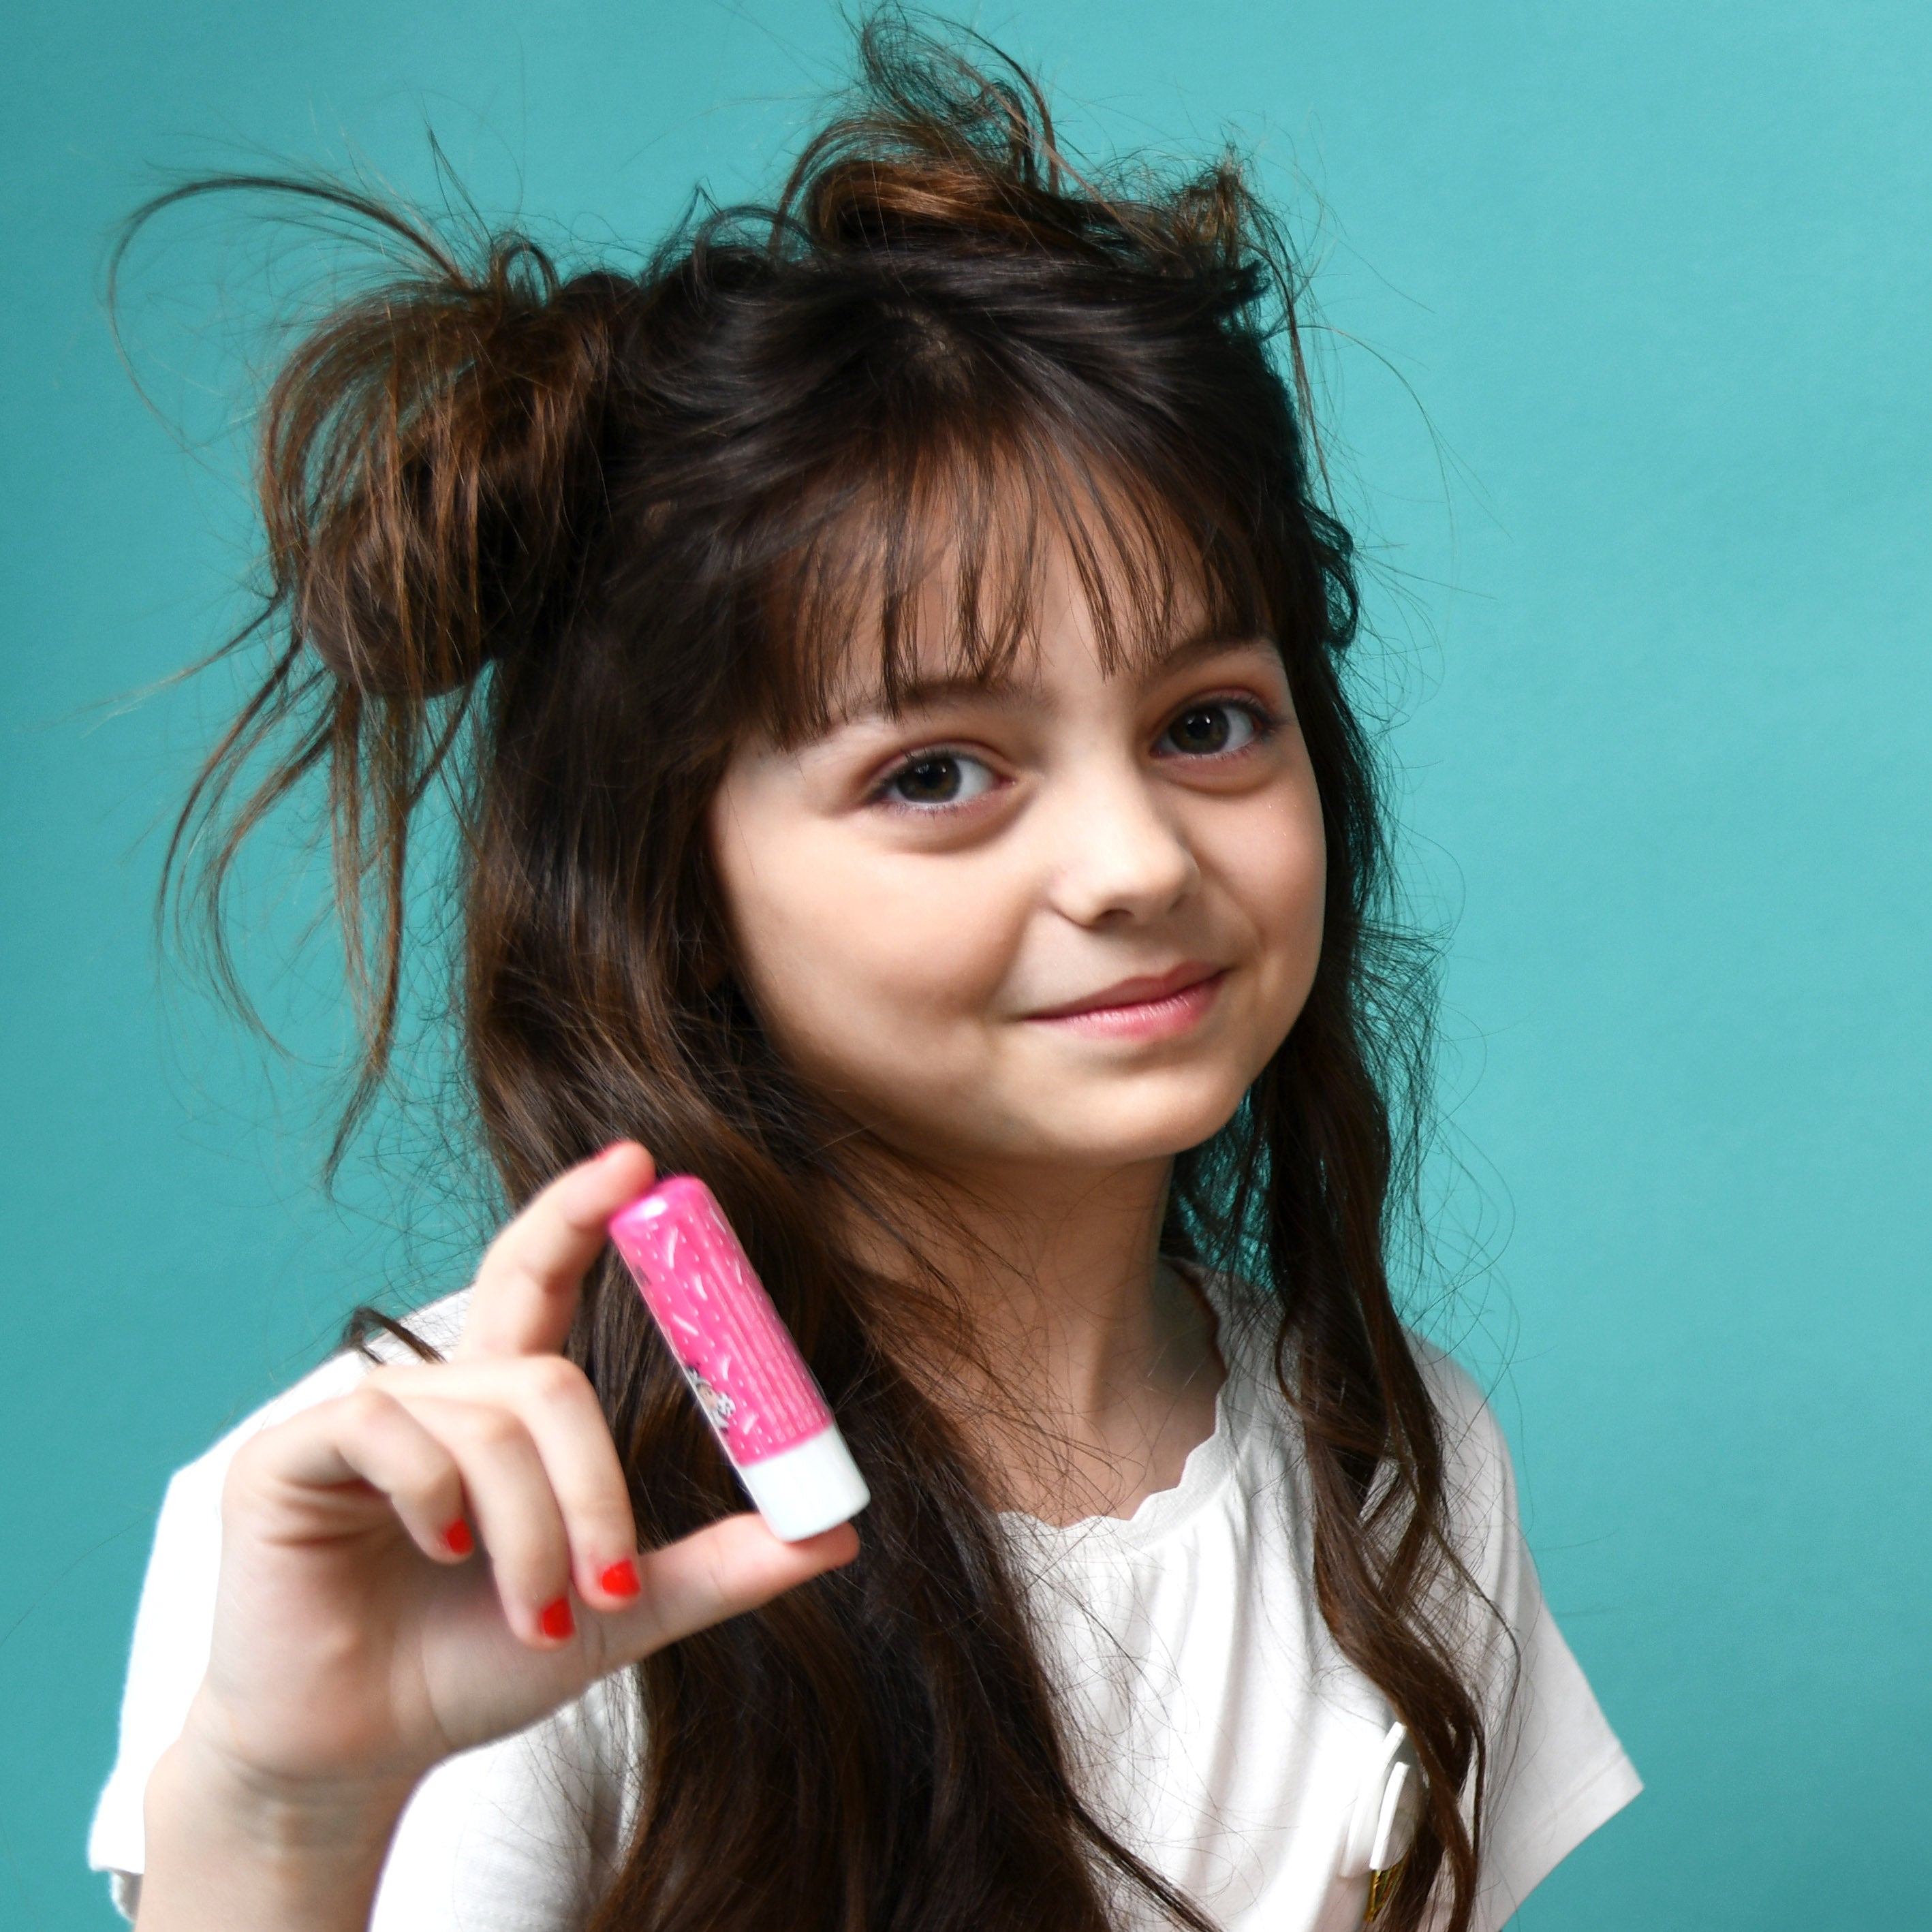 Sugar Plum XL Lip Balm: Non-Toxic Kids' Makeup